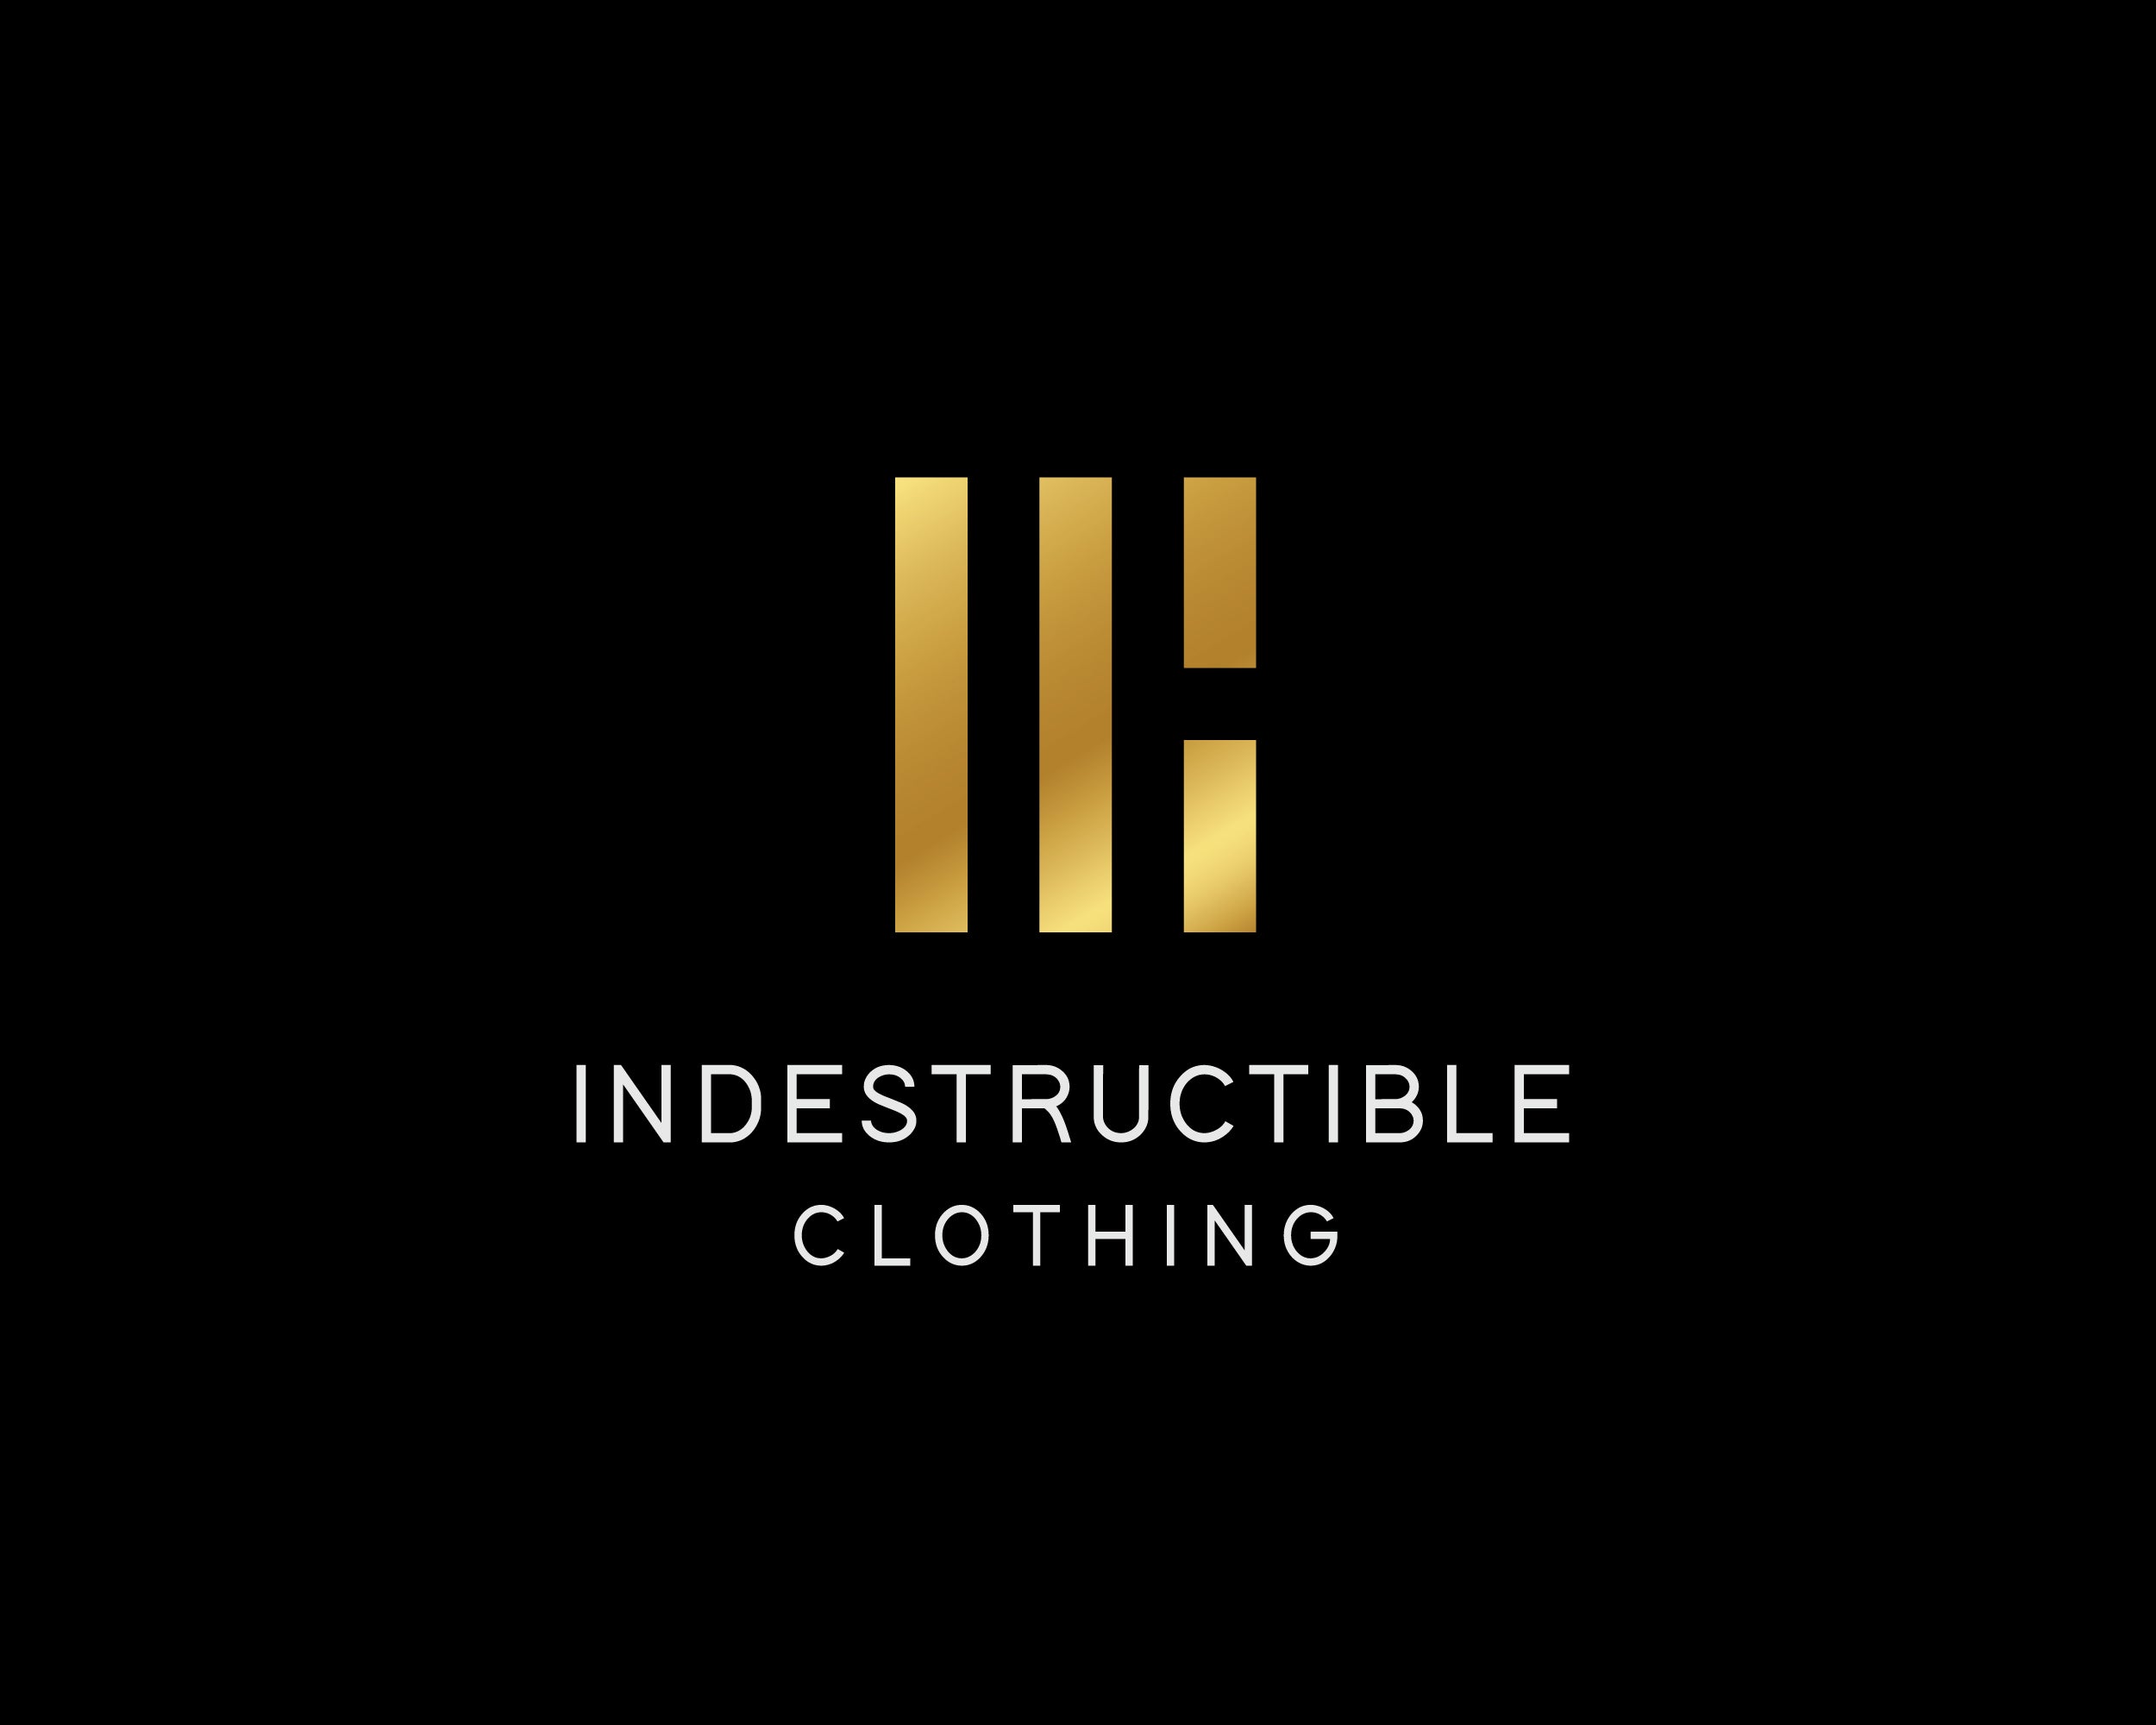 indestructible clothing company